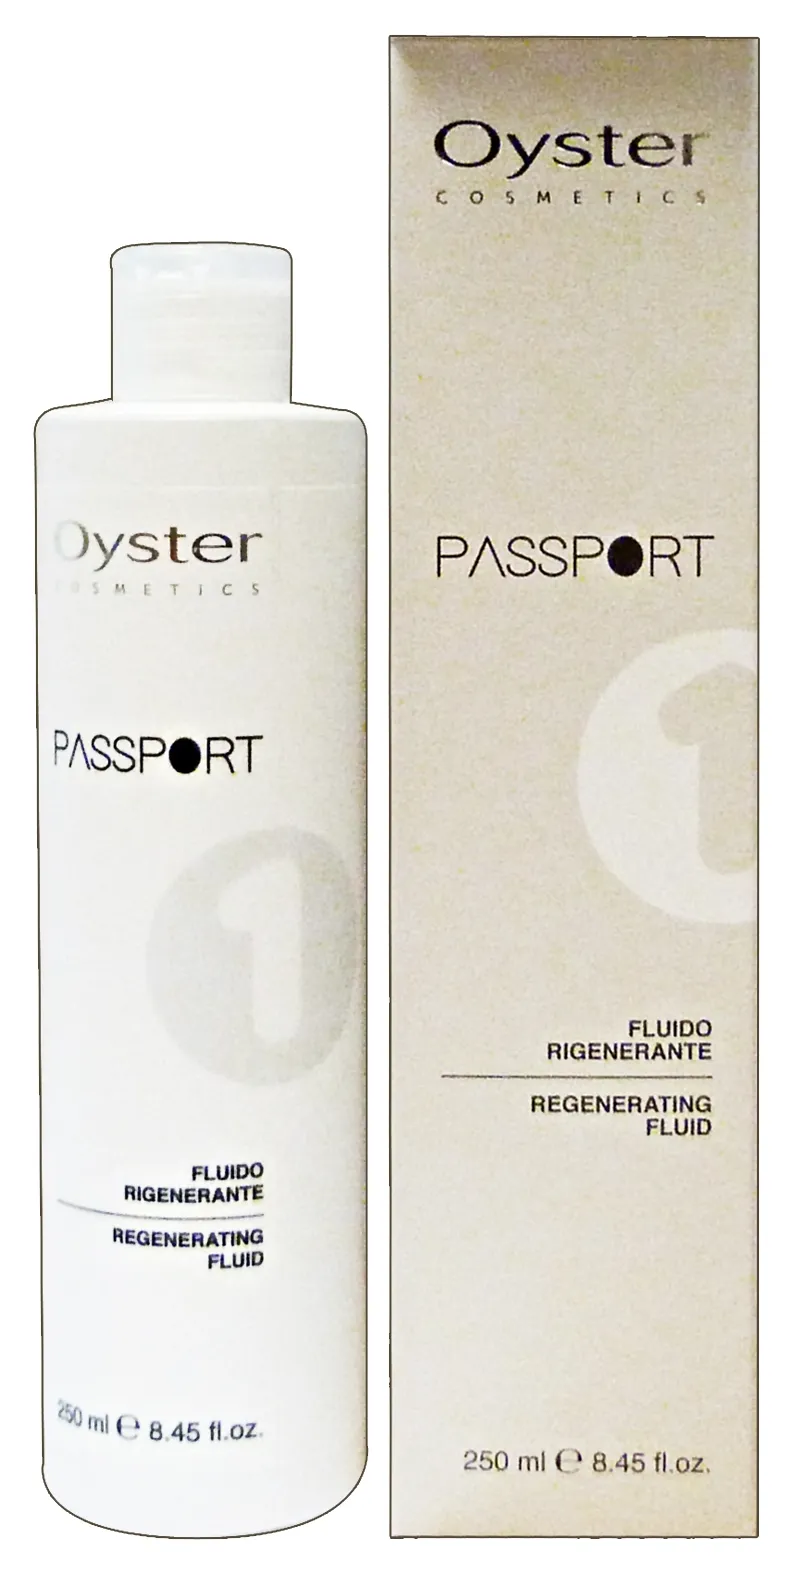 "OYSTER Passport 1 crema rigenerante per trattamenti chimici 250 ml."